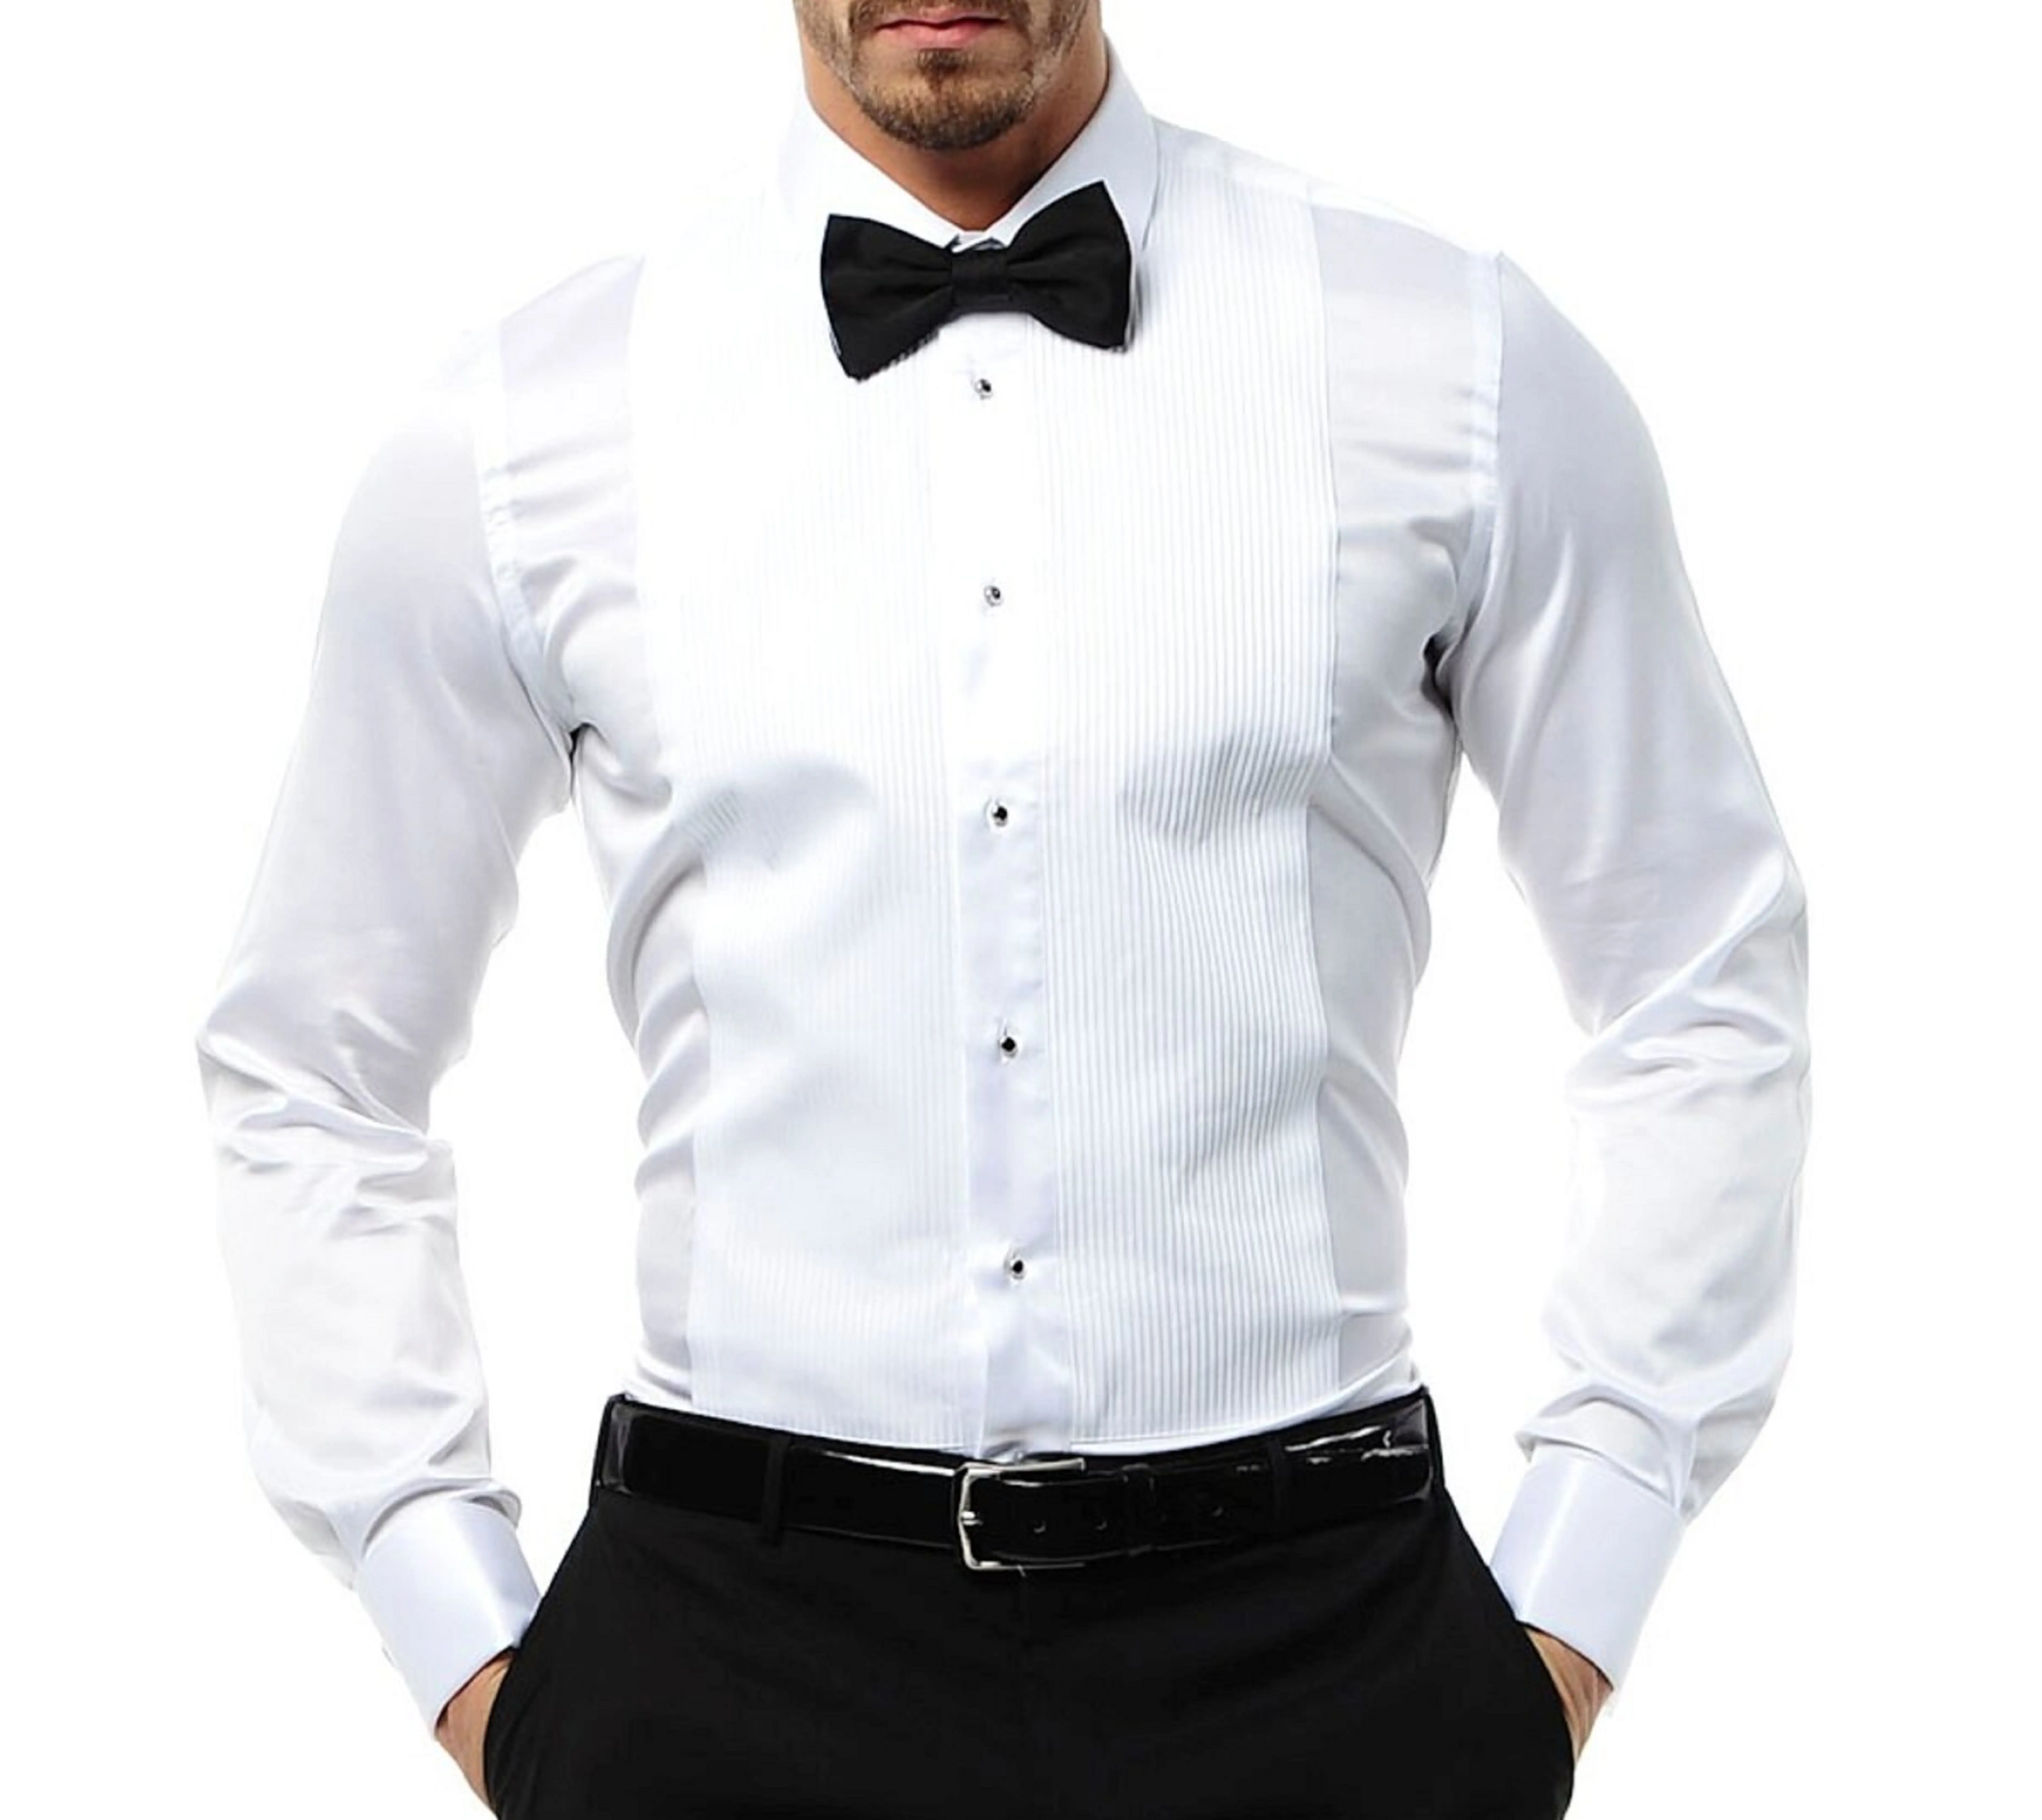 2021 Tuksedo Pria Elegan, Baju Tuxedo Pengantin Pria, 100 Kualitas Tinggi % Katun Klasik untuk Pria